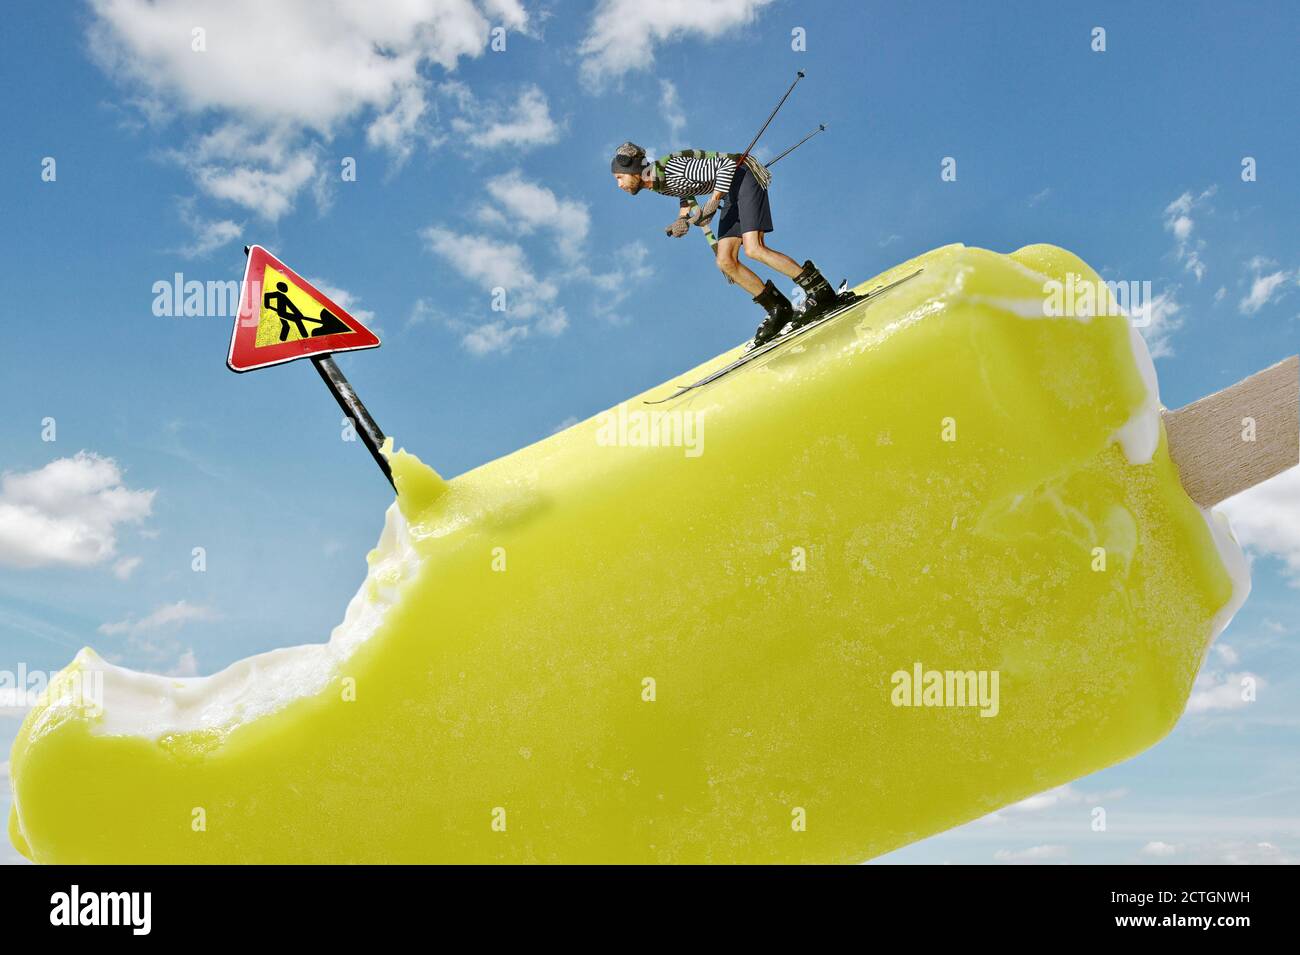 Mini skieur de montagne qui descend une colline de glace avec le signe de la route de danger et de fossé sur fond de ciel bleu ensoleillé, scène conceptuelle des sports d'hiver Banque D'Images